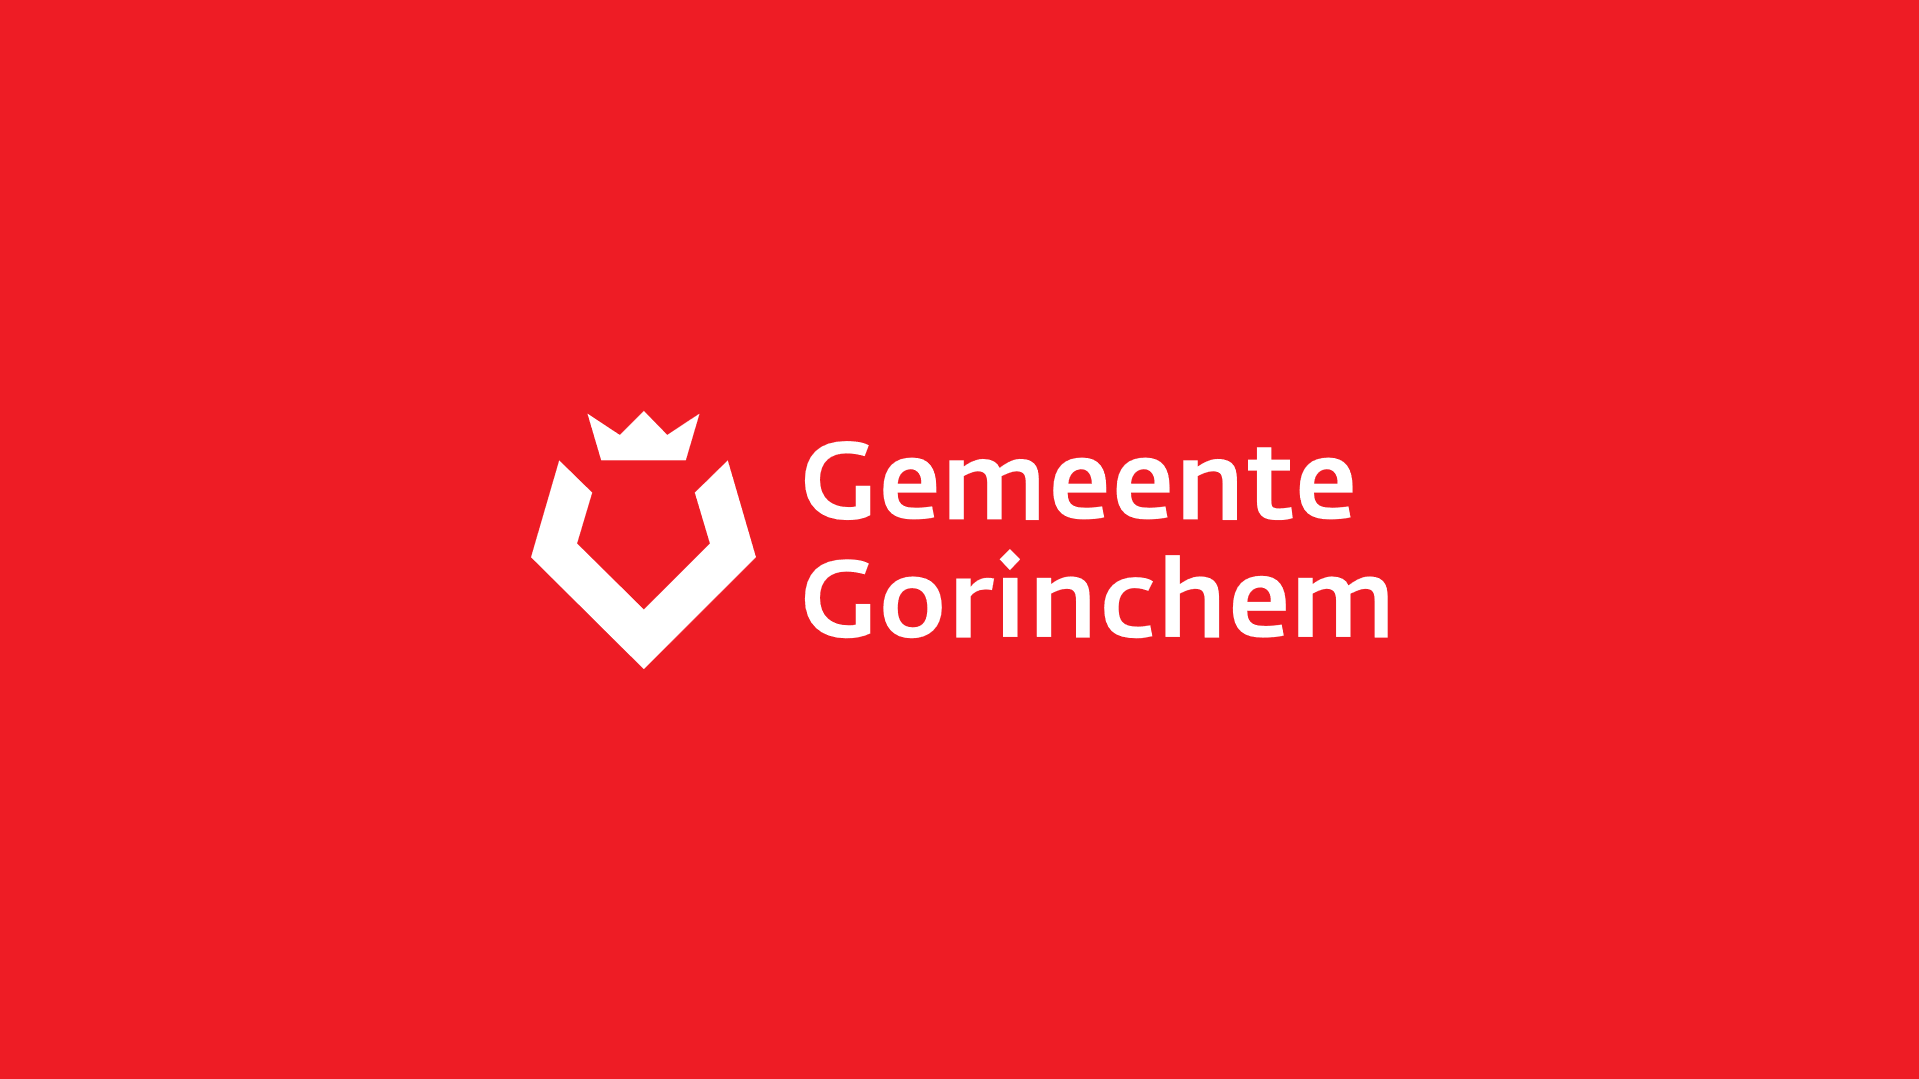 Gemeente Gorichem Header Image